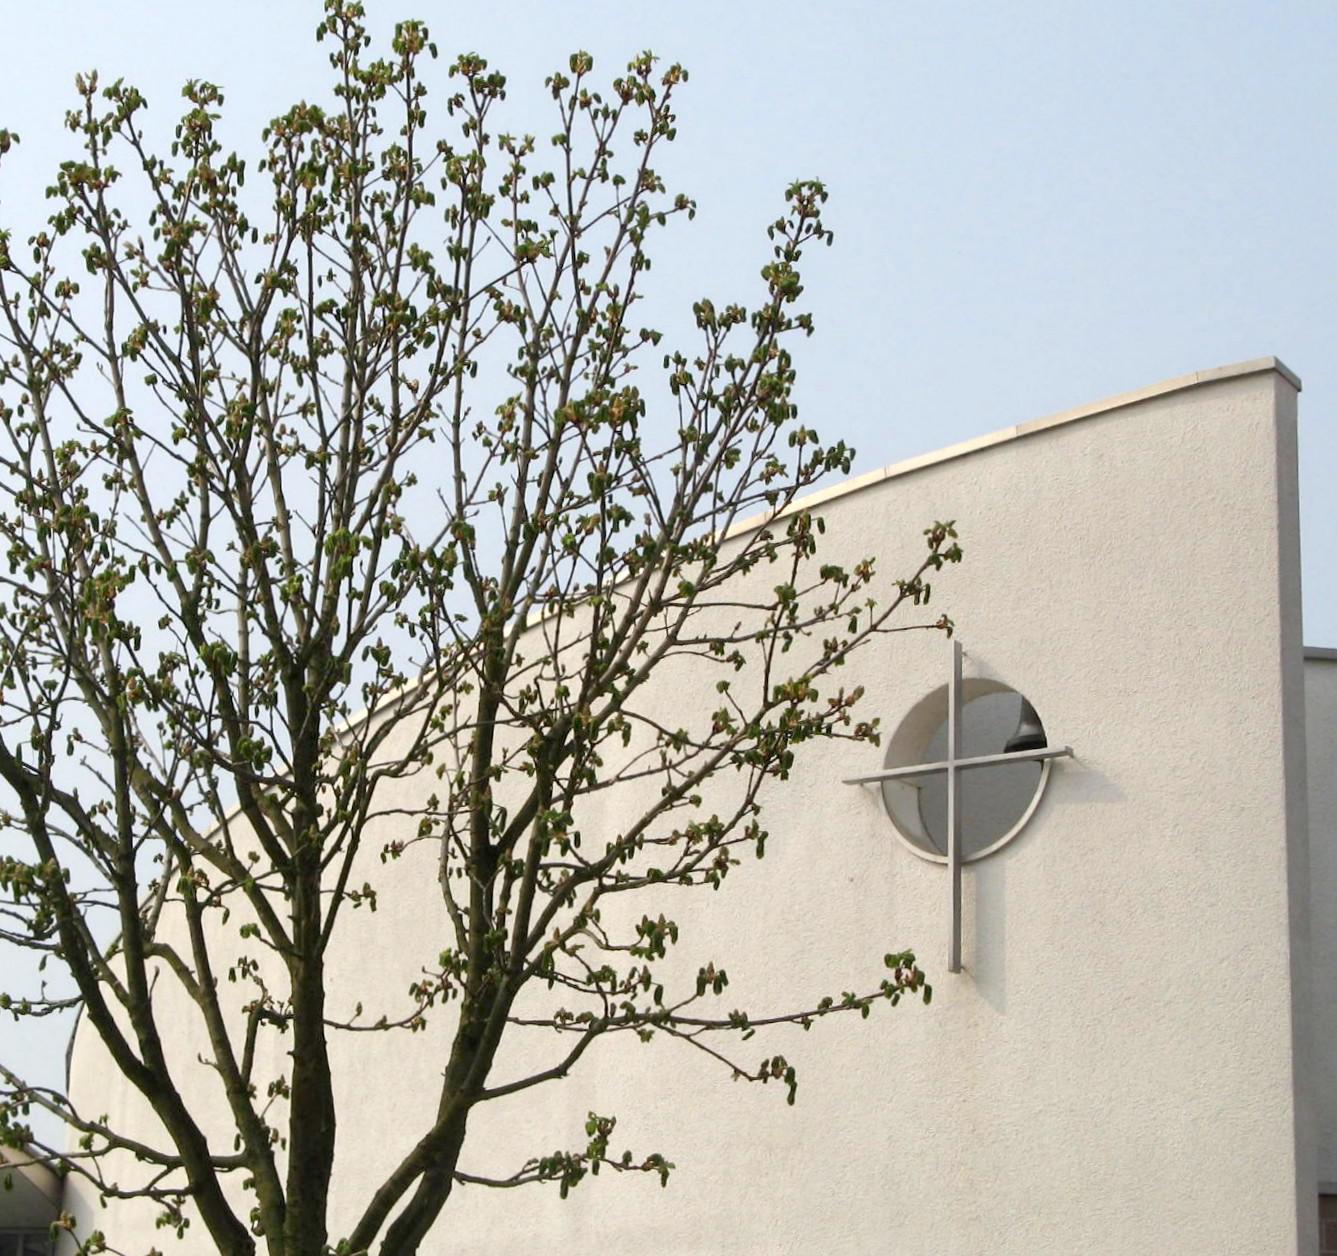 Erlöserkirche Wiesbaden Sauerland - Evangelische  Erlösergemeinde Wiesbaden-Sauerland, Föhrer Straße 84 in Wiesbaden